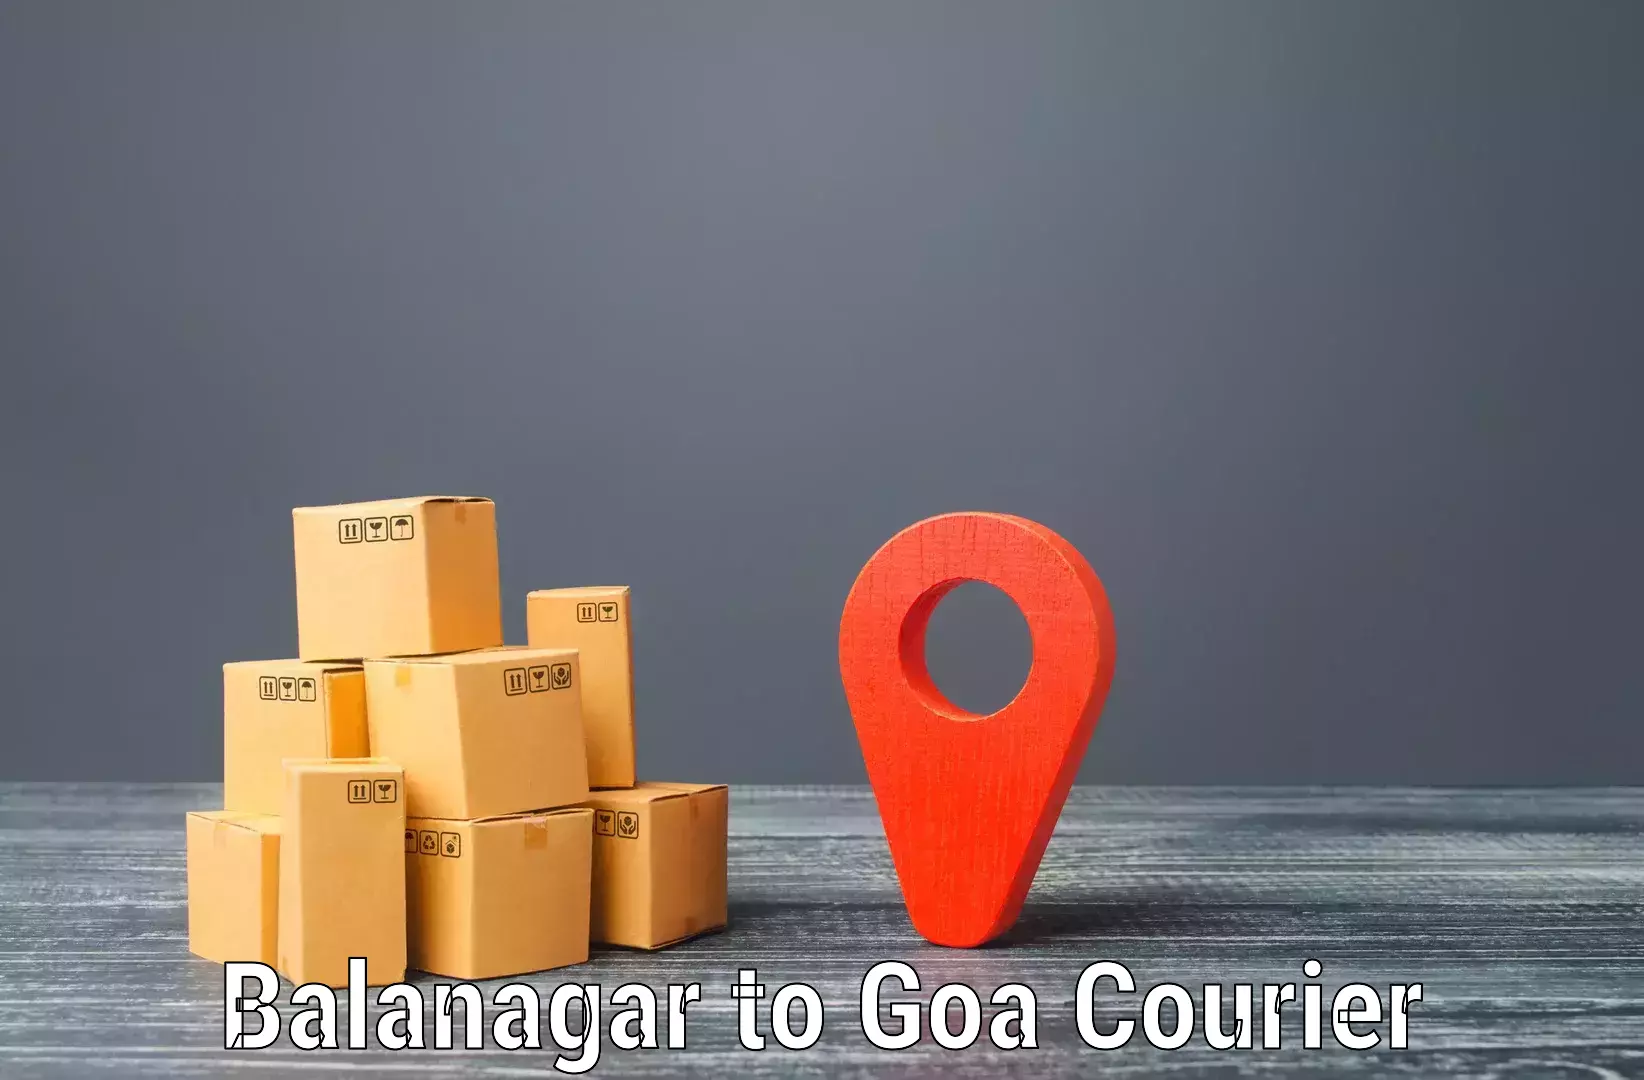 Easy access courier services Balanagar to Canacona